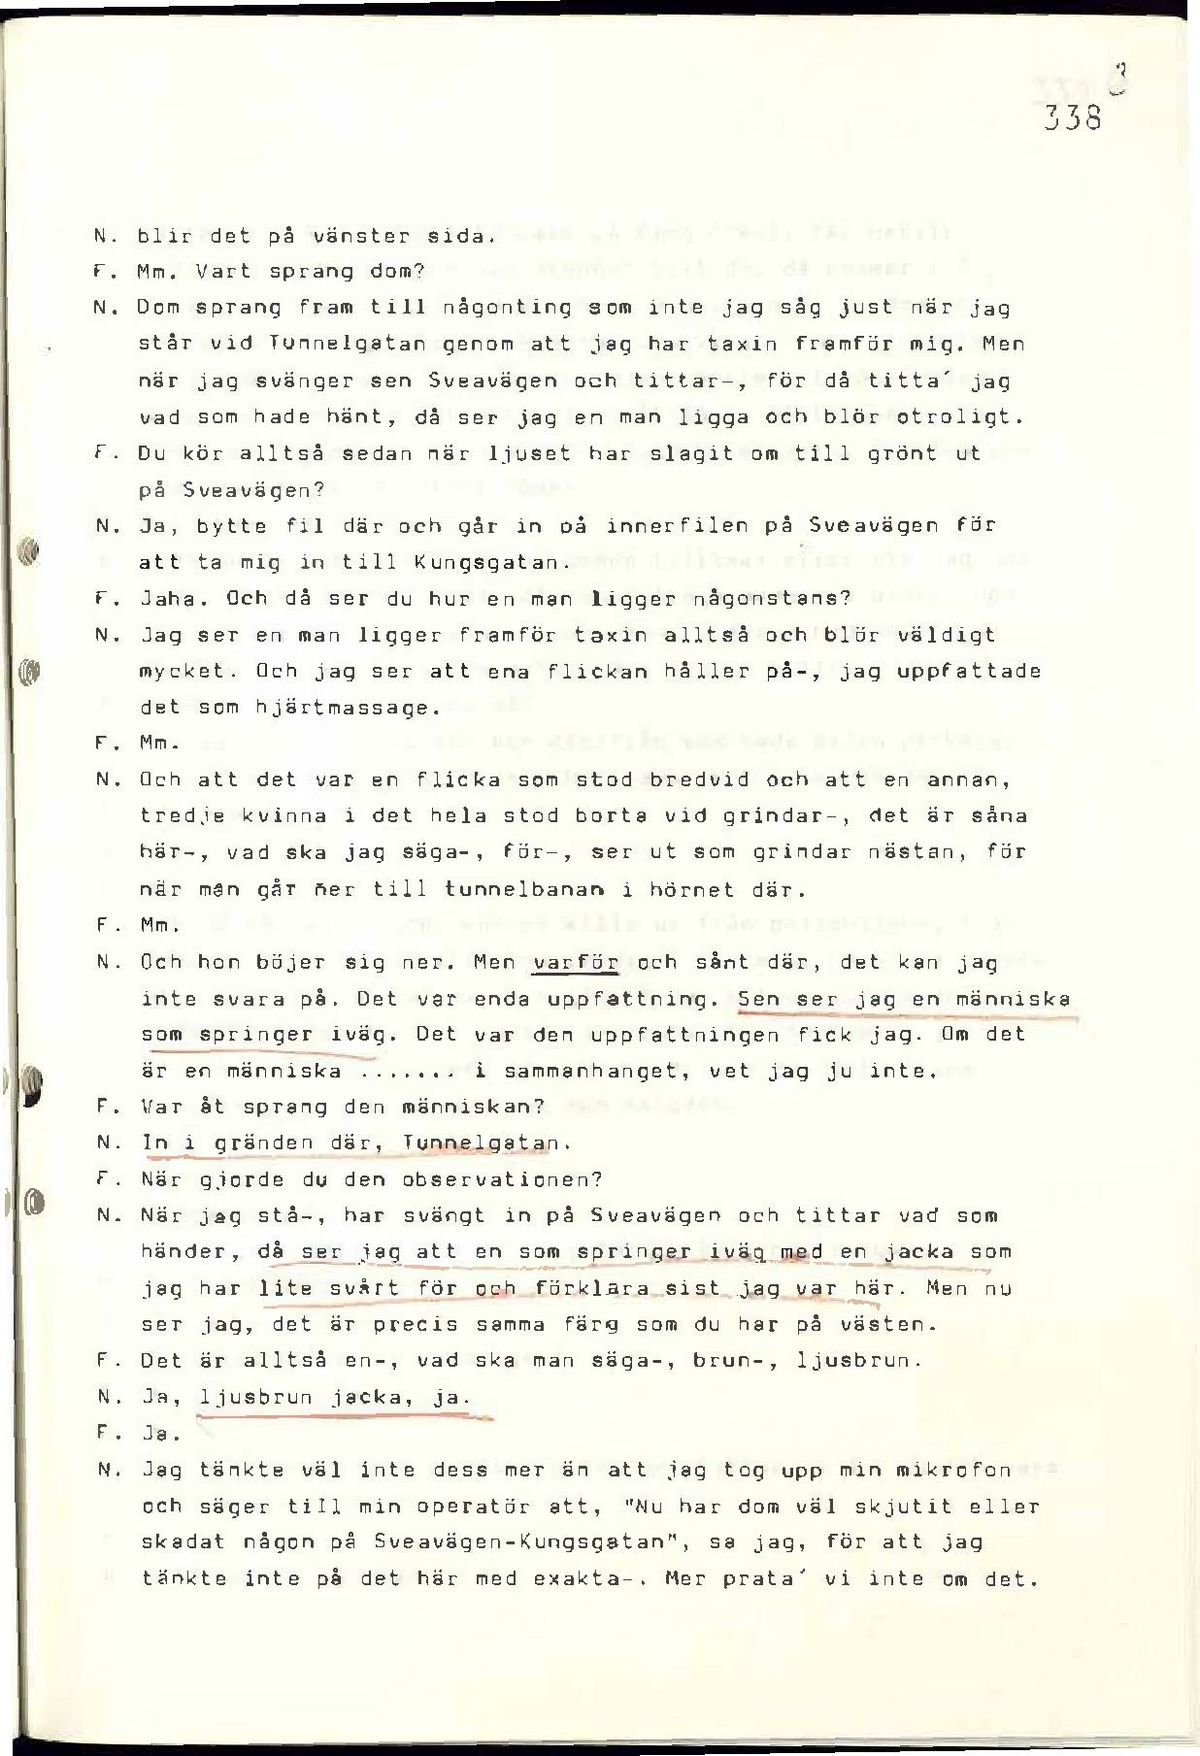 Pol-1986-04-08 E21-00-A Jan Nilsson.pdf